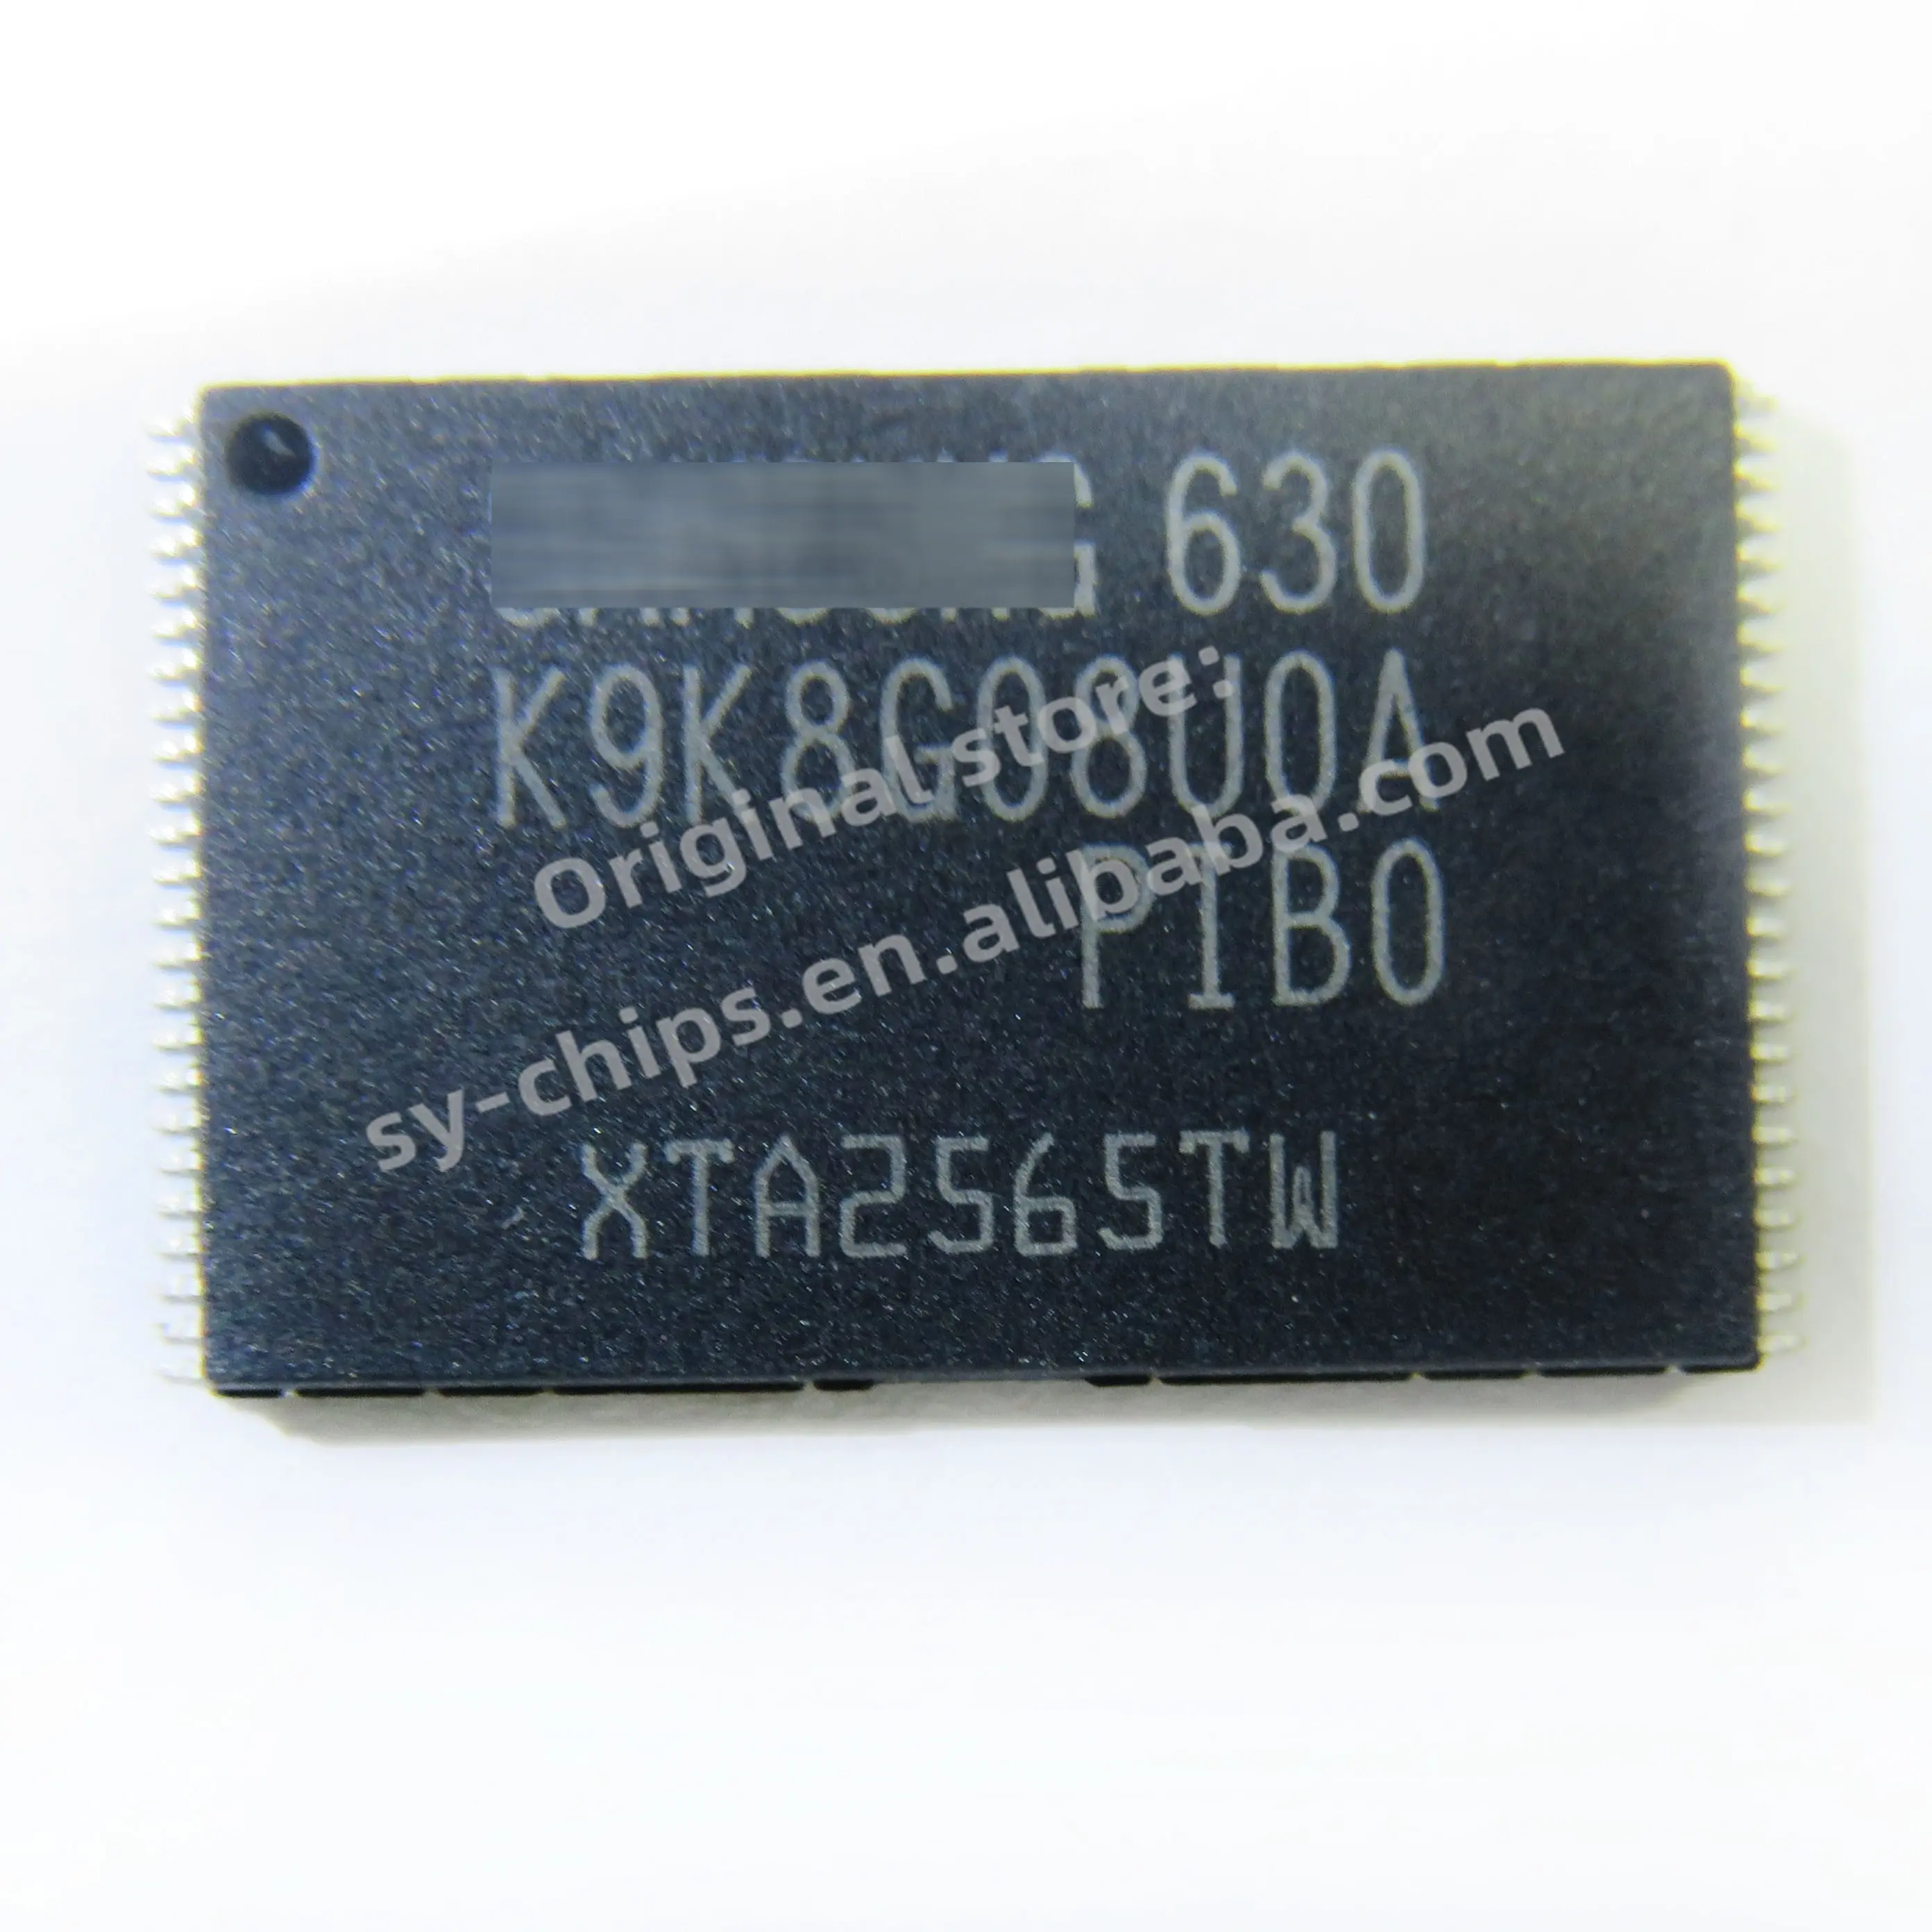 שבבי SY שבבי IC K9K8G08U0A-PIBO מעגל משולב שבבי אלקטרוניקה זיכרון פלאש K9K8G08U0 K9K8G08U0A-PIBO